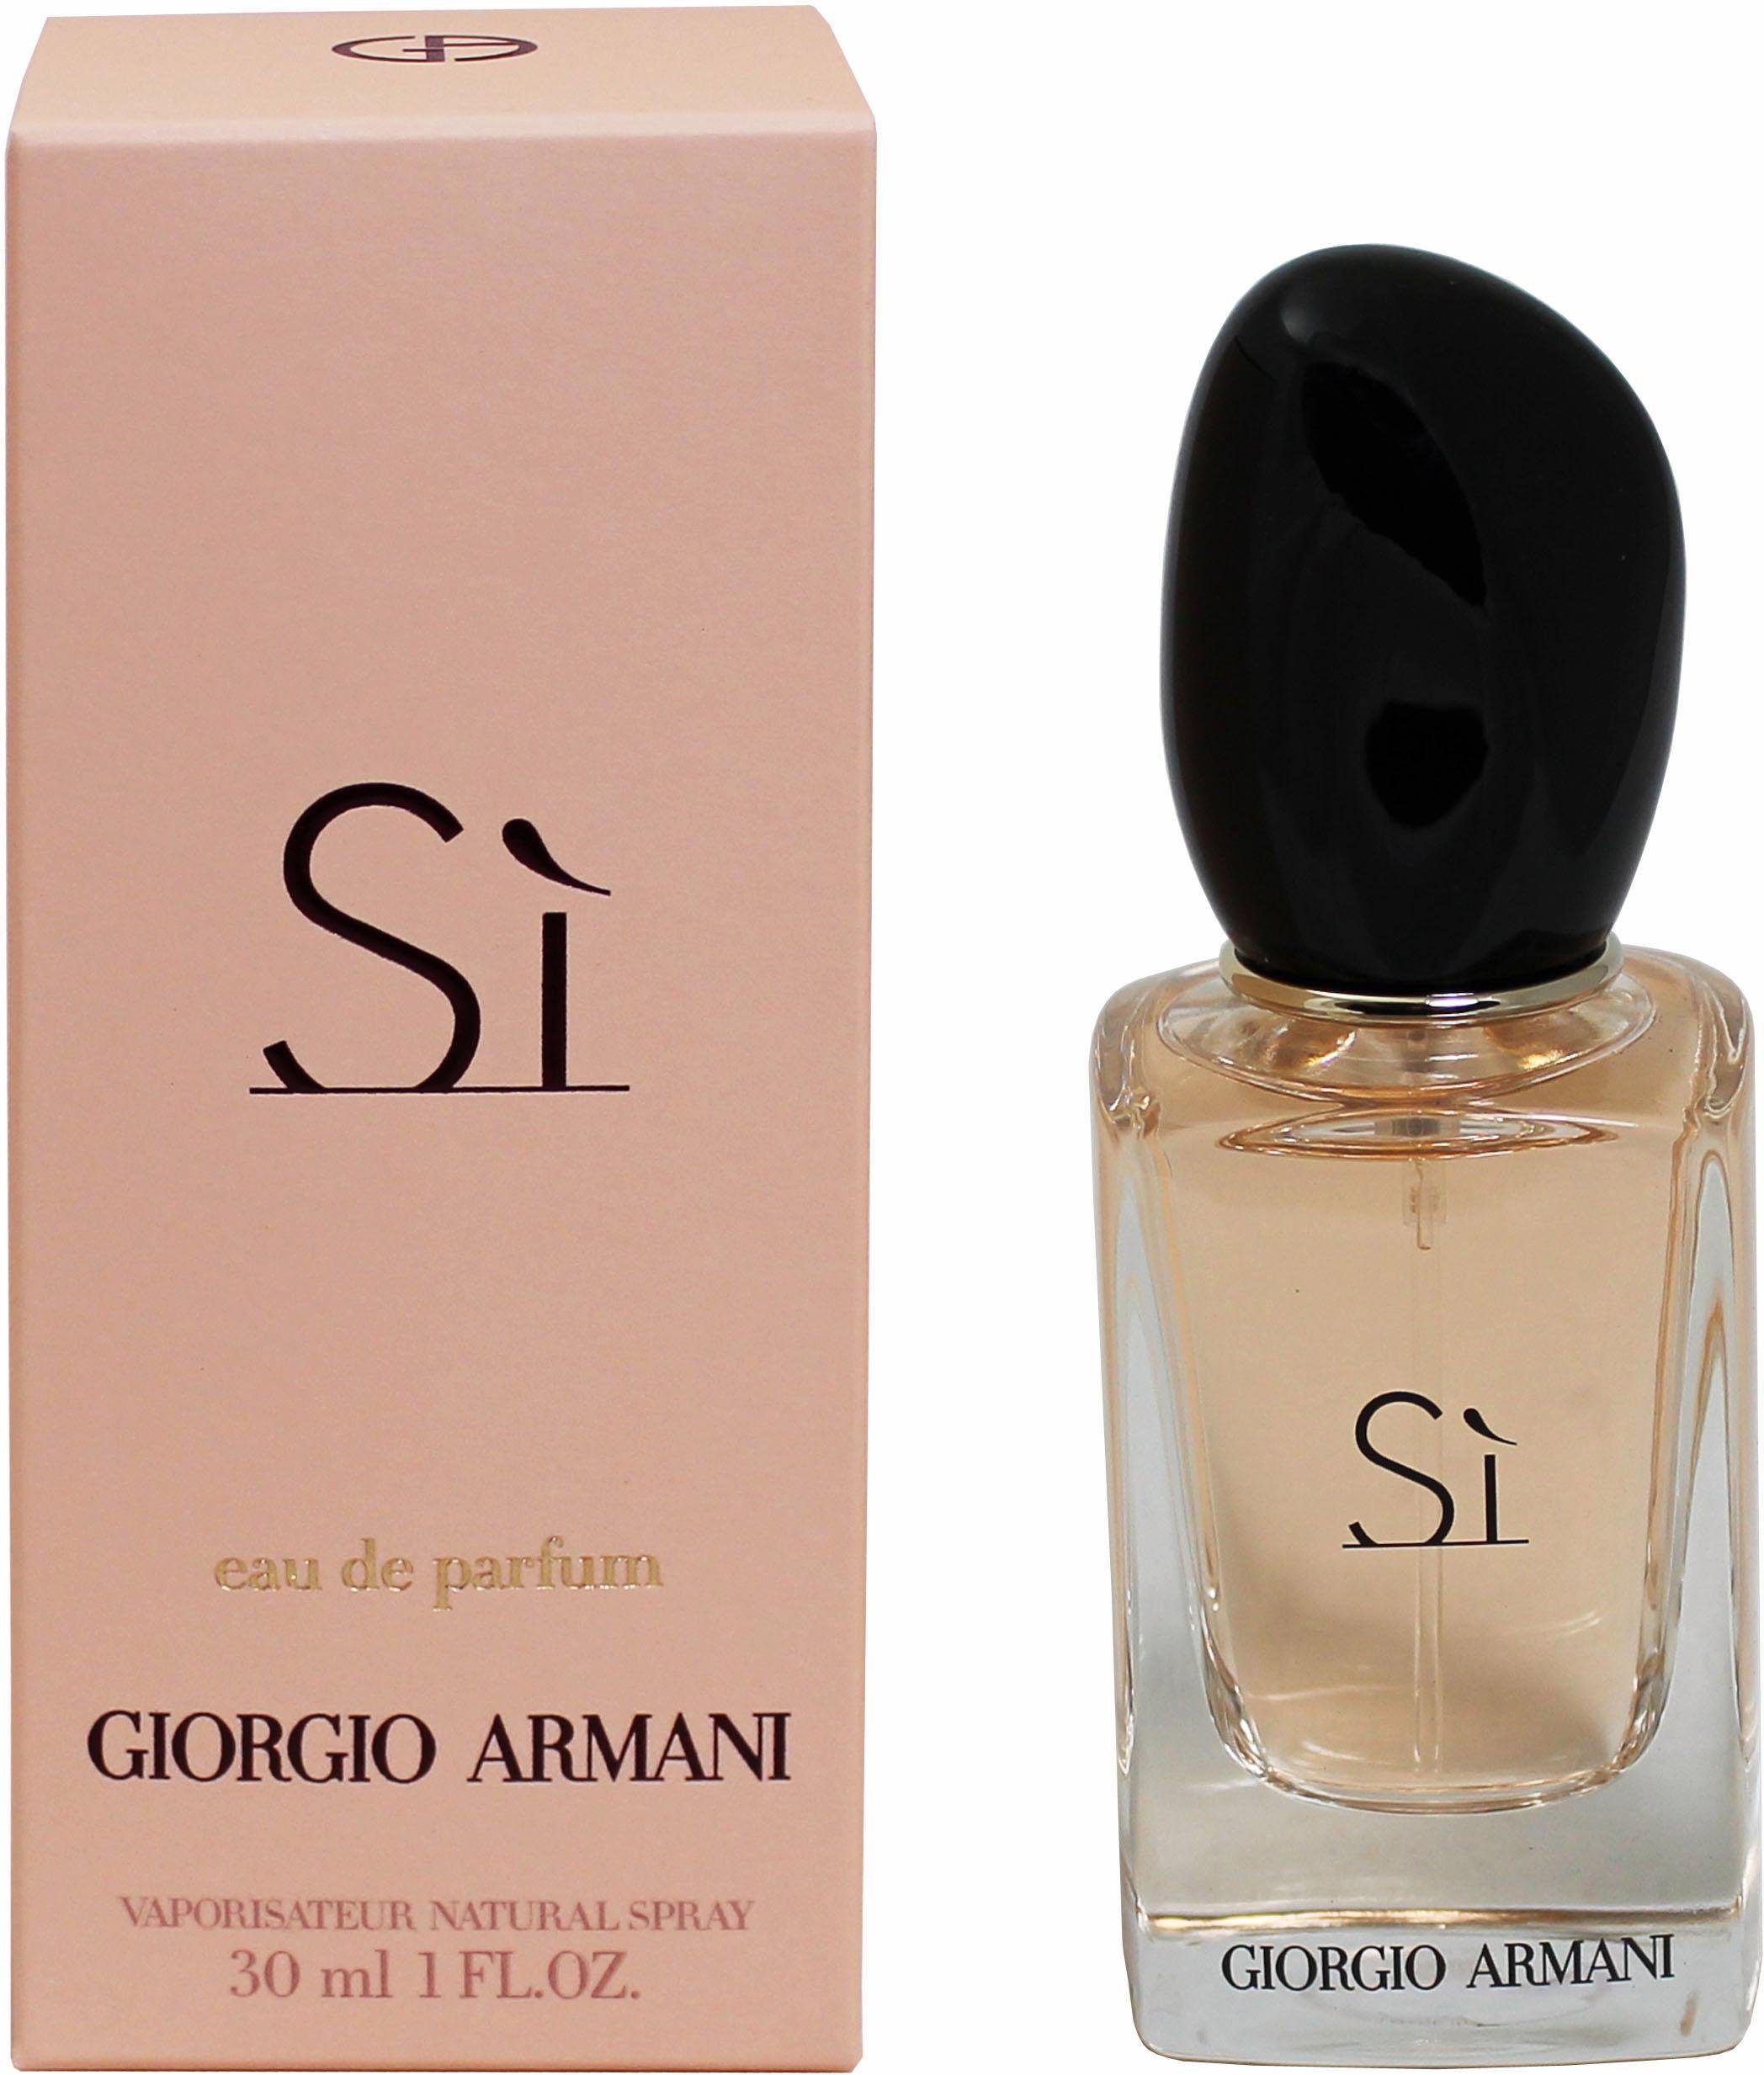 Giorgio Armani Eau de Parfum »Sì« online kaufen | OTTO